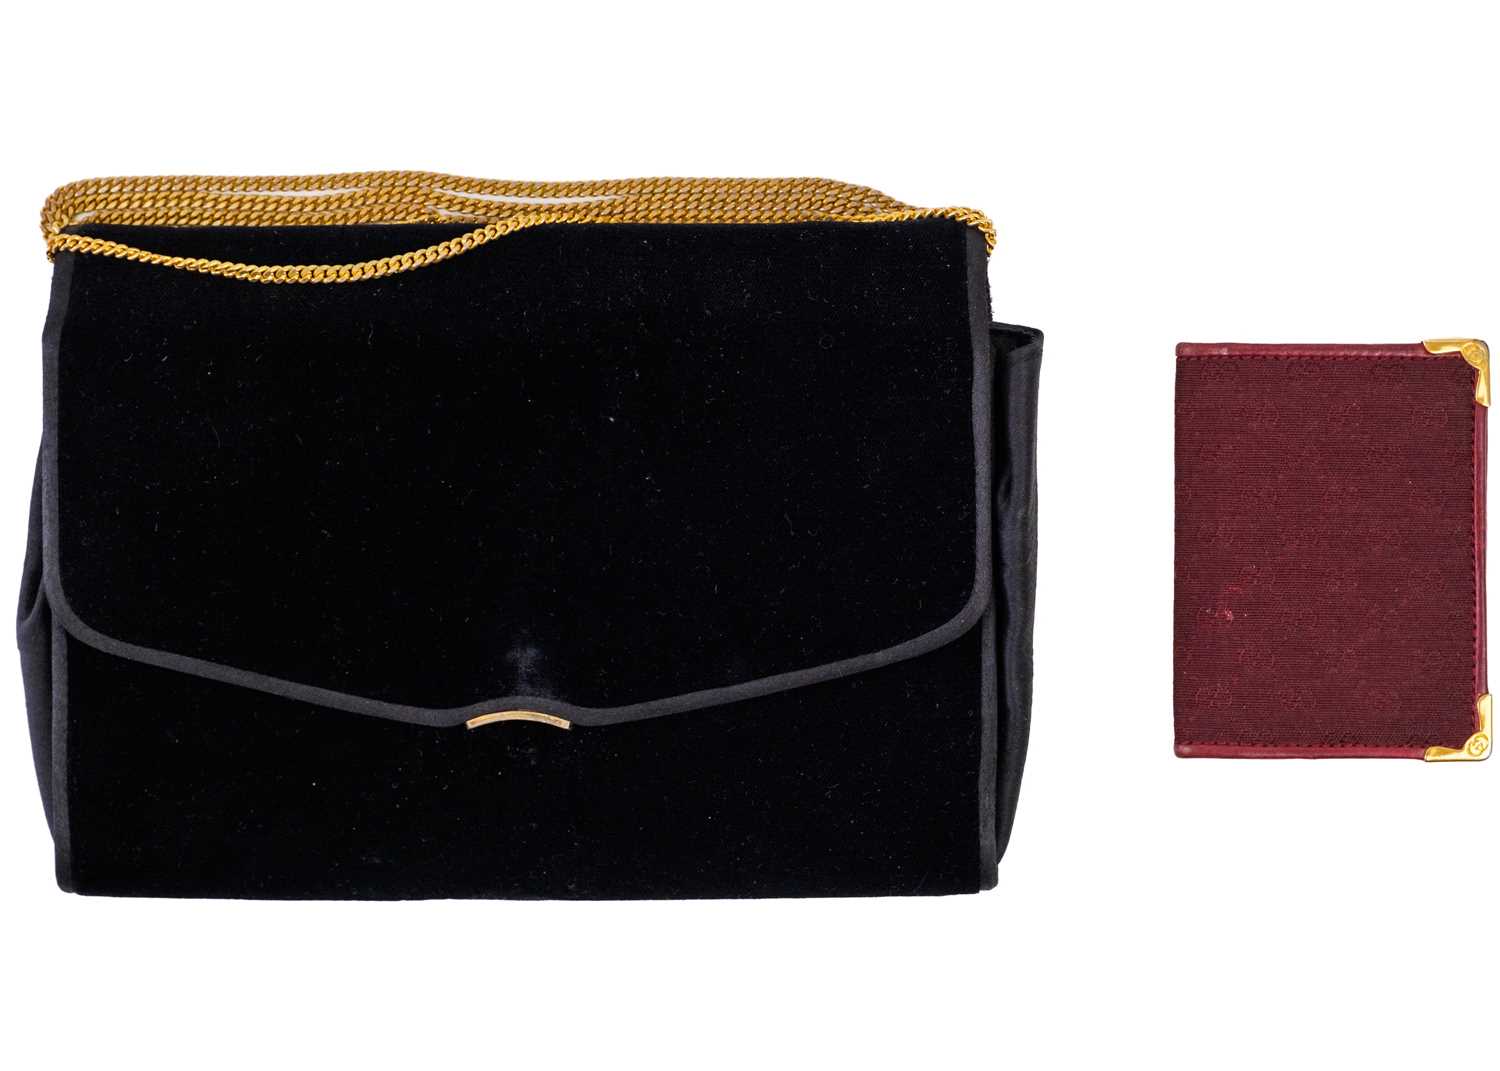 A Gucci black velvet handbag and a Gucci pocketbook.